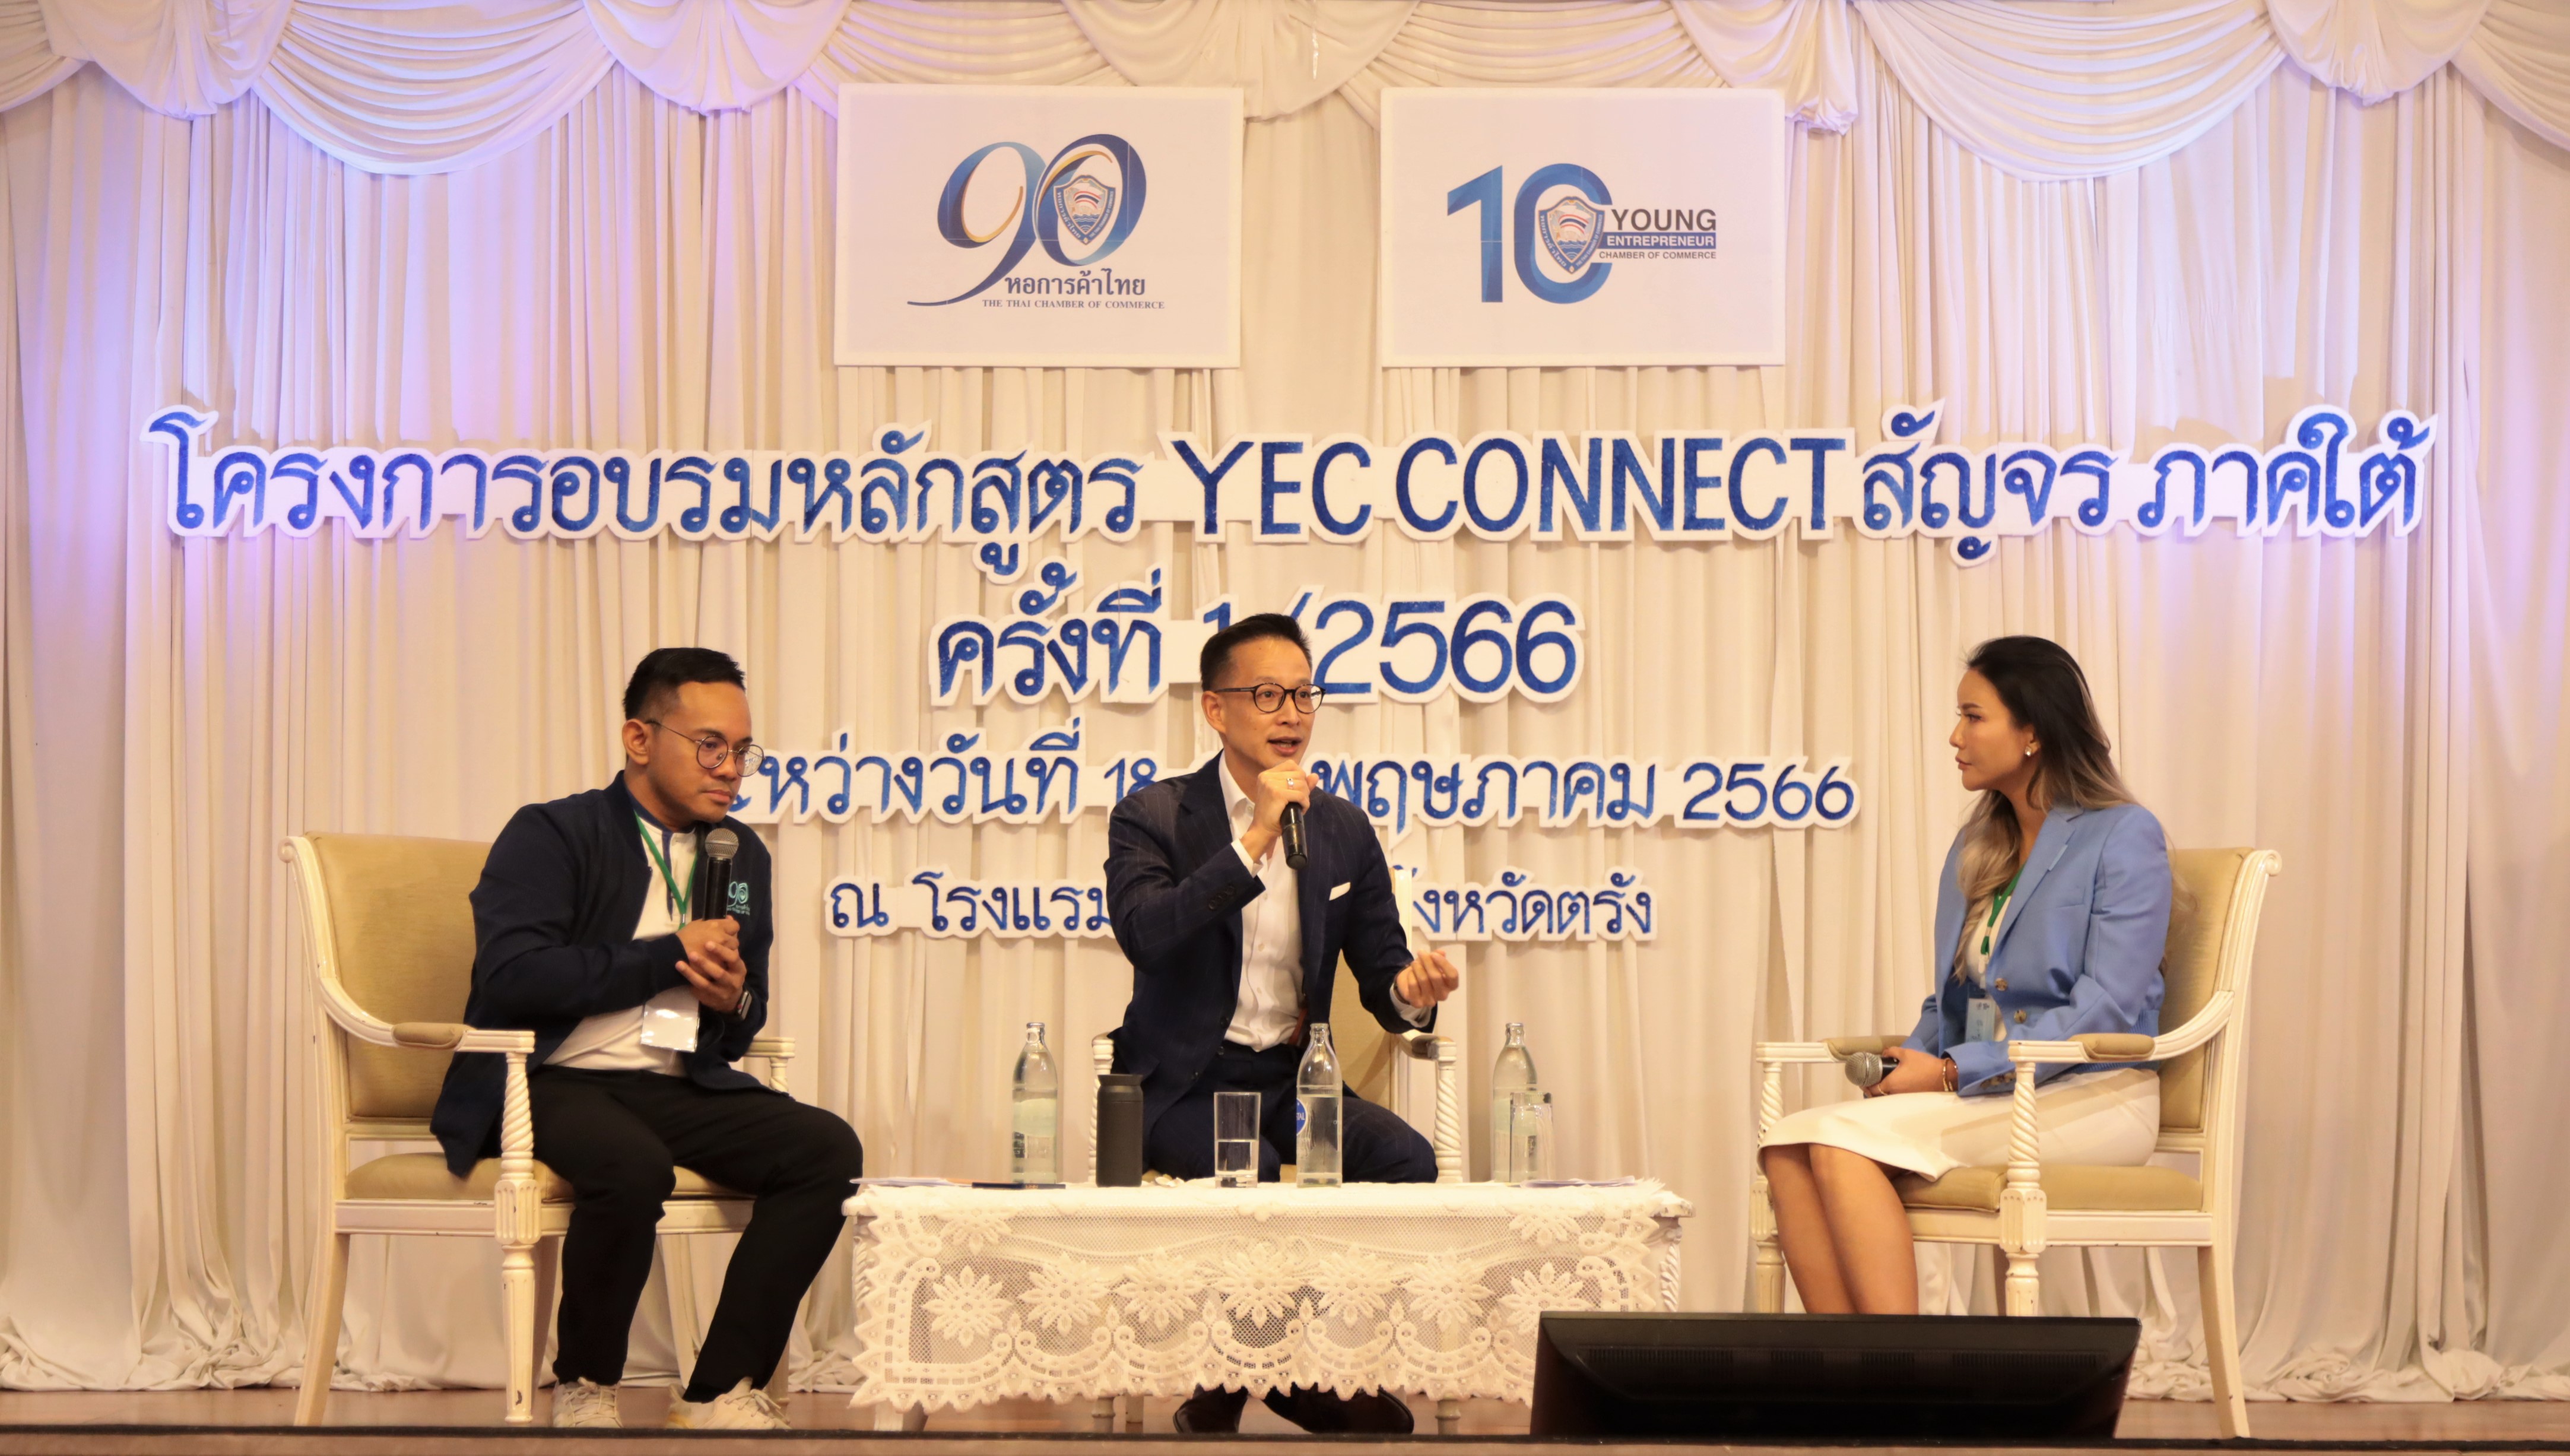 เมืองไทยประกันชีวิต สนับสนุนกิจกรรมหอการค้าไทยและสภาหอการค้าแห่งประเทศไทย ร่วมบรรยายพิเศษ “โครงการอบรมหลักสูตร YEC Connect สัญจร ปี 2566 ภาคใต้” สอดคล้องนโยบายบริษัทฯ ด้าน ESG ในการส่งต่อความสุขสู่สังคมอย่างครบถ้วนทุกมิติ